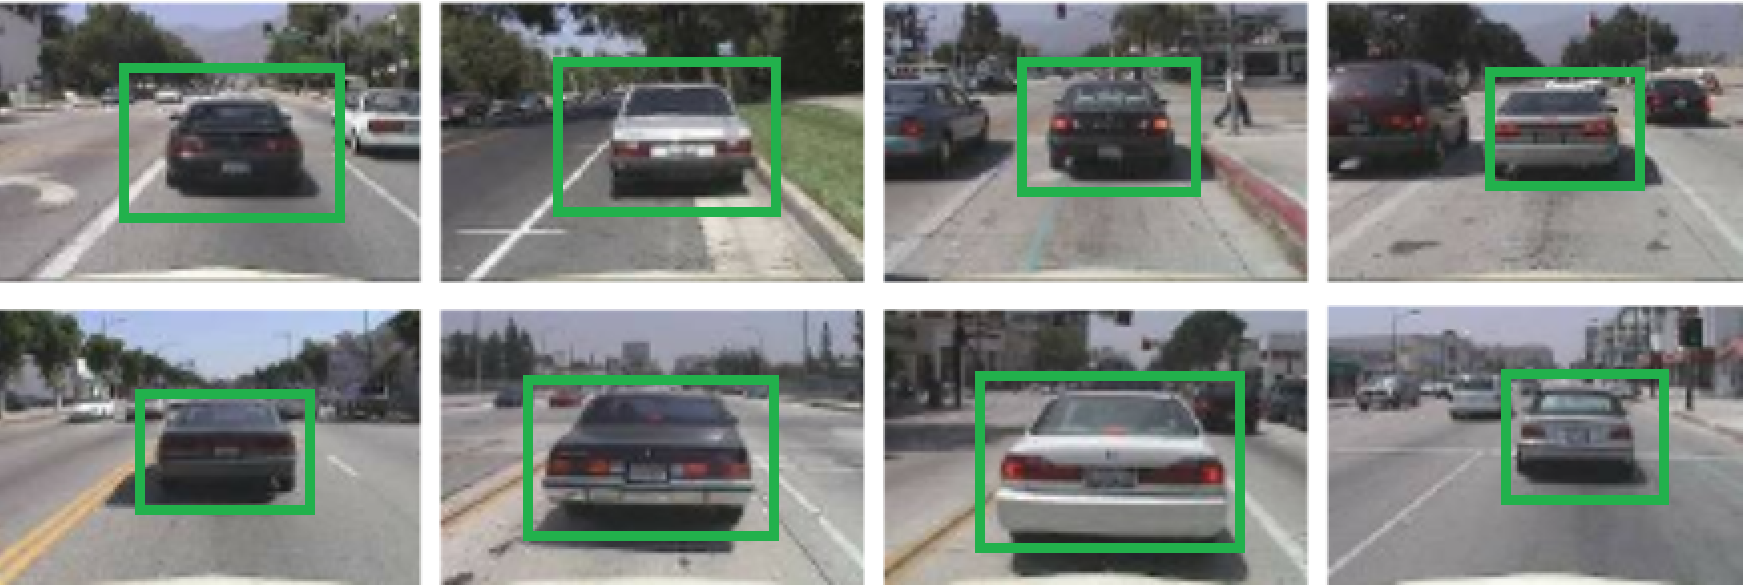 使用Python为初学者构建AI汽车和行人跟踪